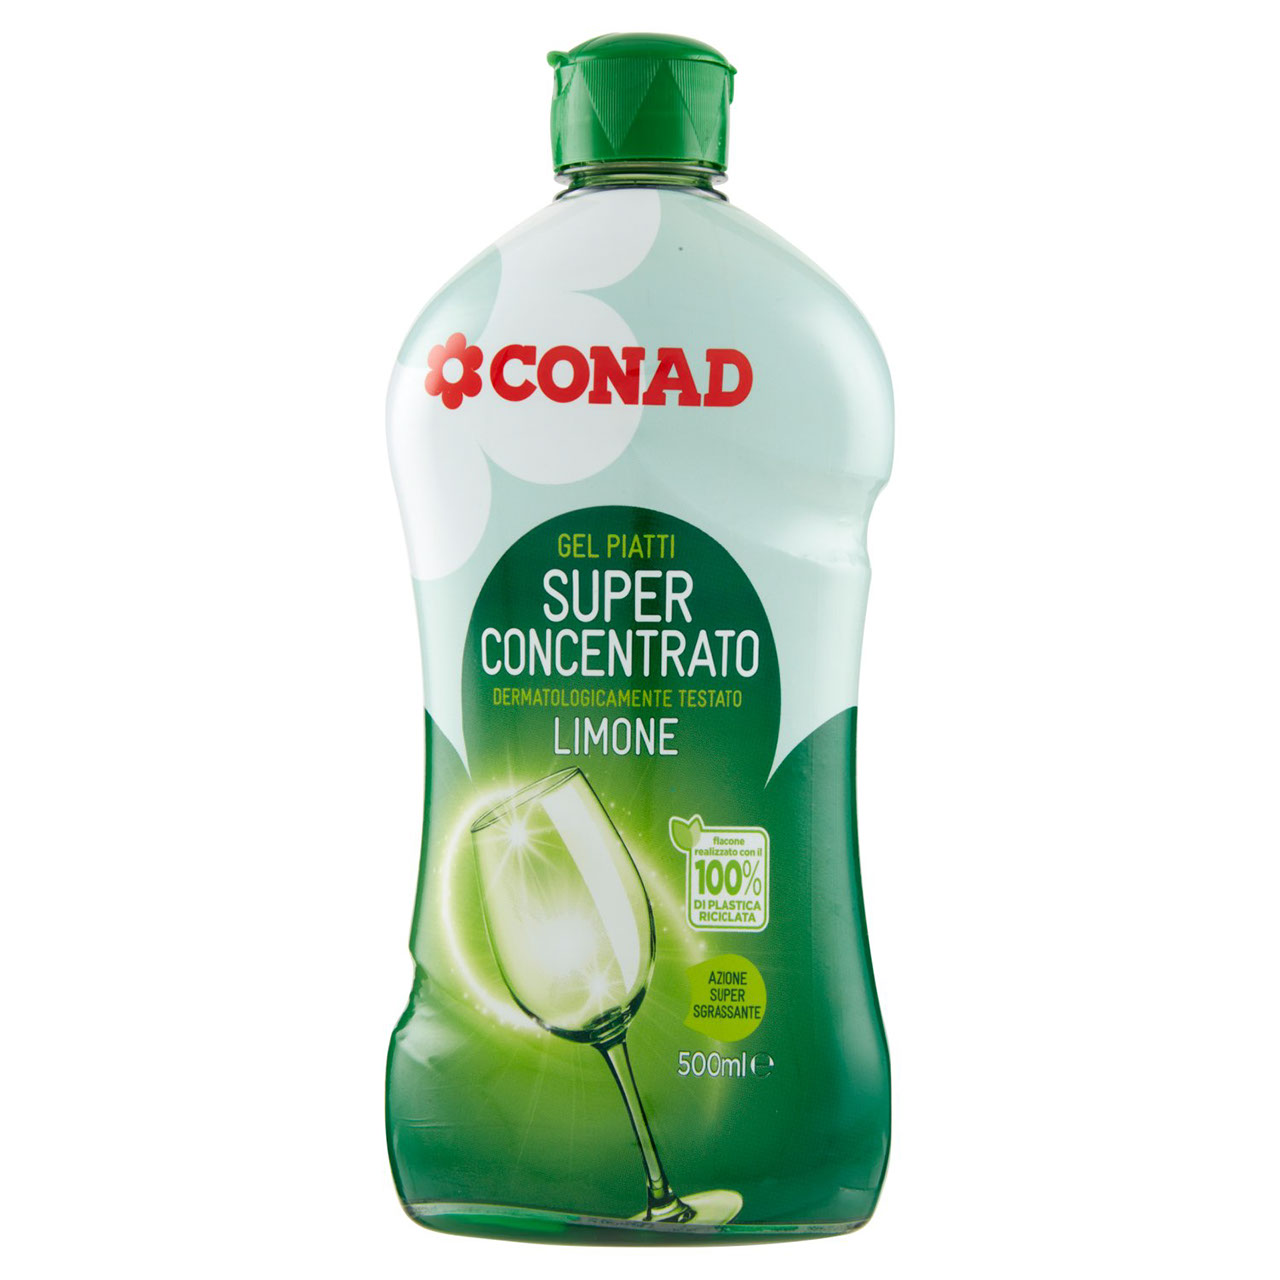 Gel Piatti Super Concentrato Limone 500 ml Conad